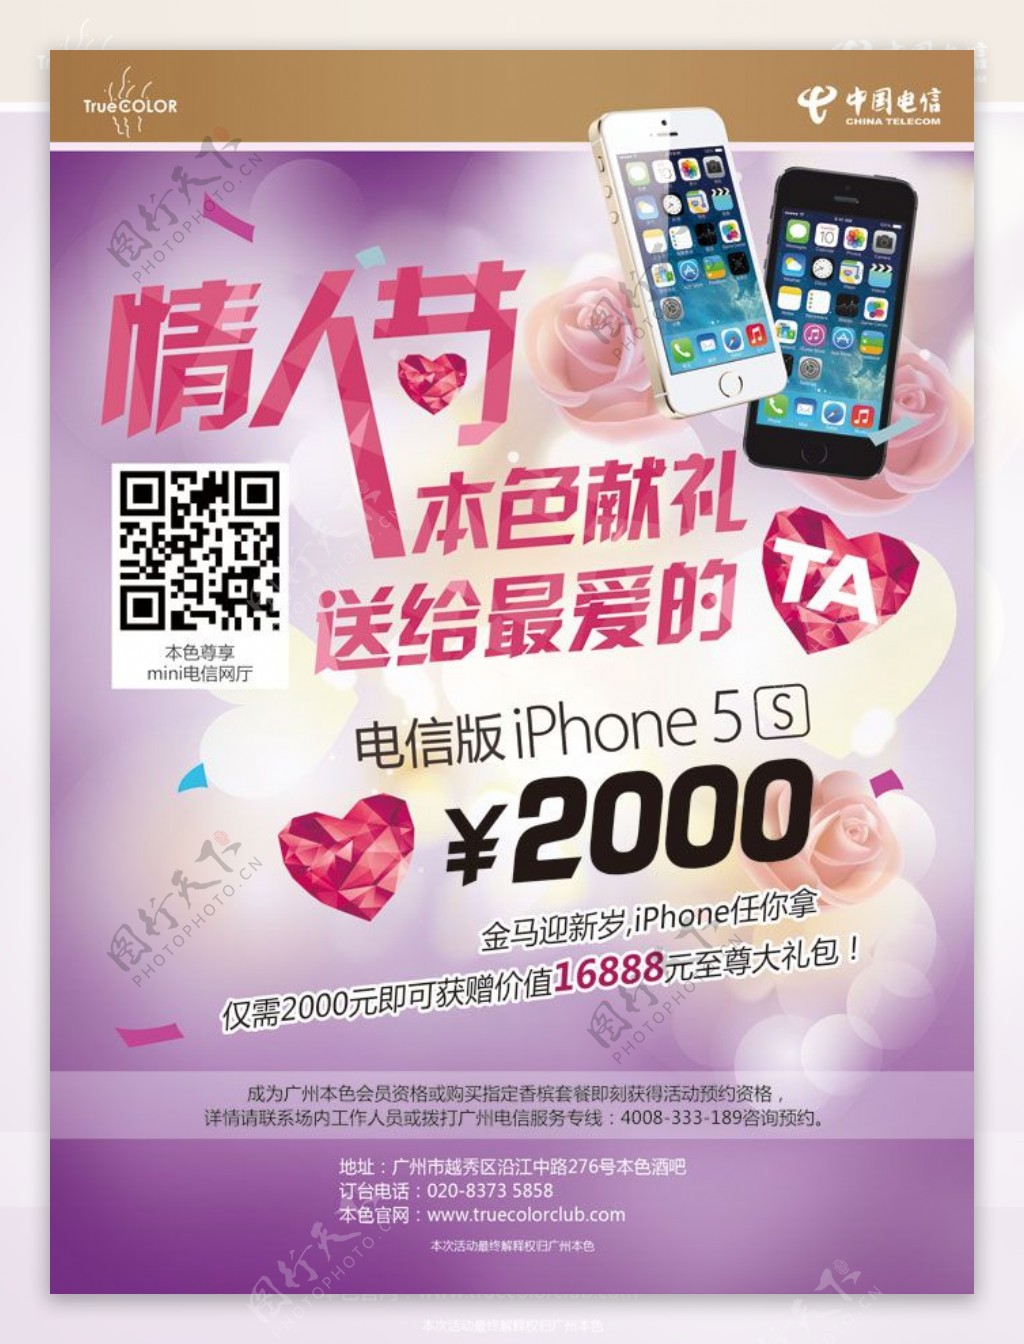 中国电信苹果5S广告PSD素材